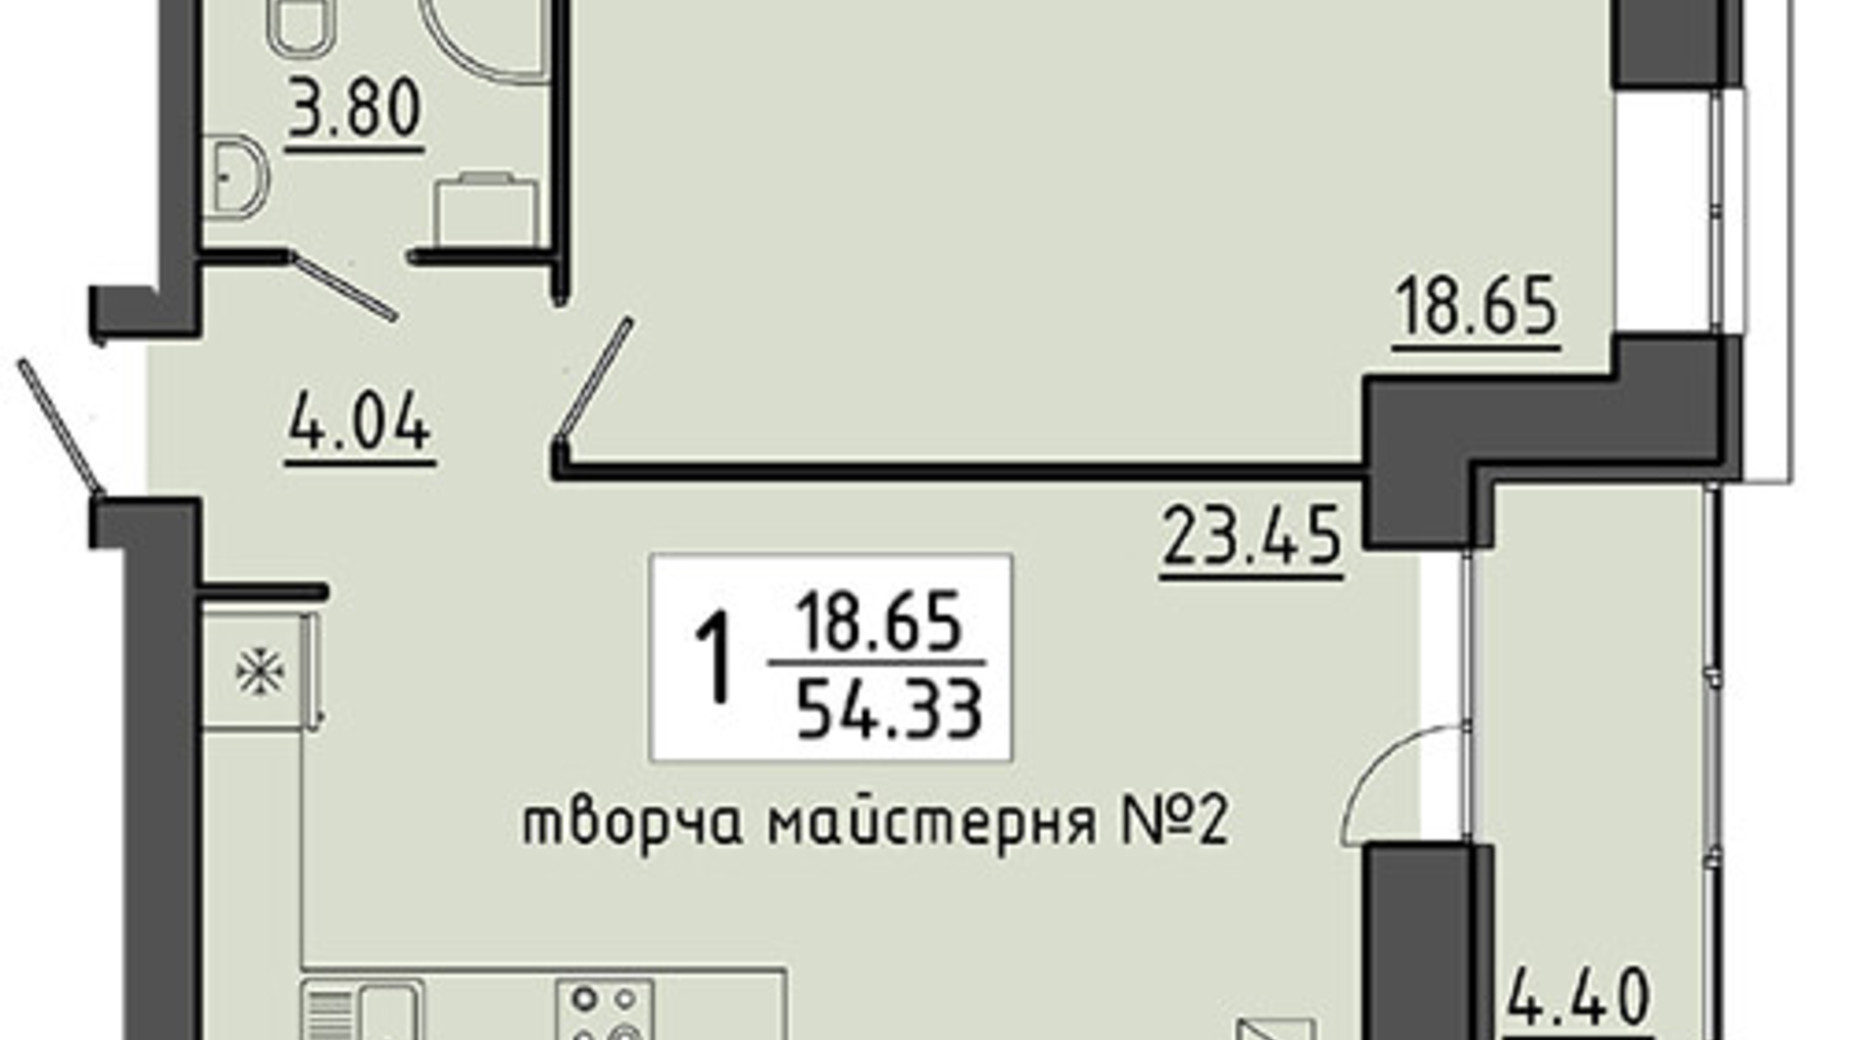 Планировка помещения в ЖК Энергия 54.33 м², фото 129537